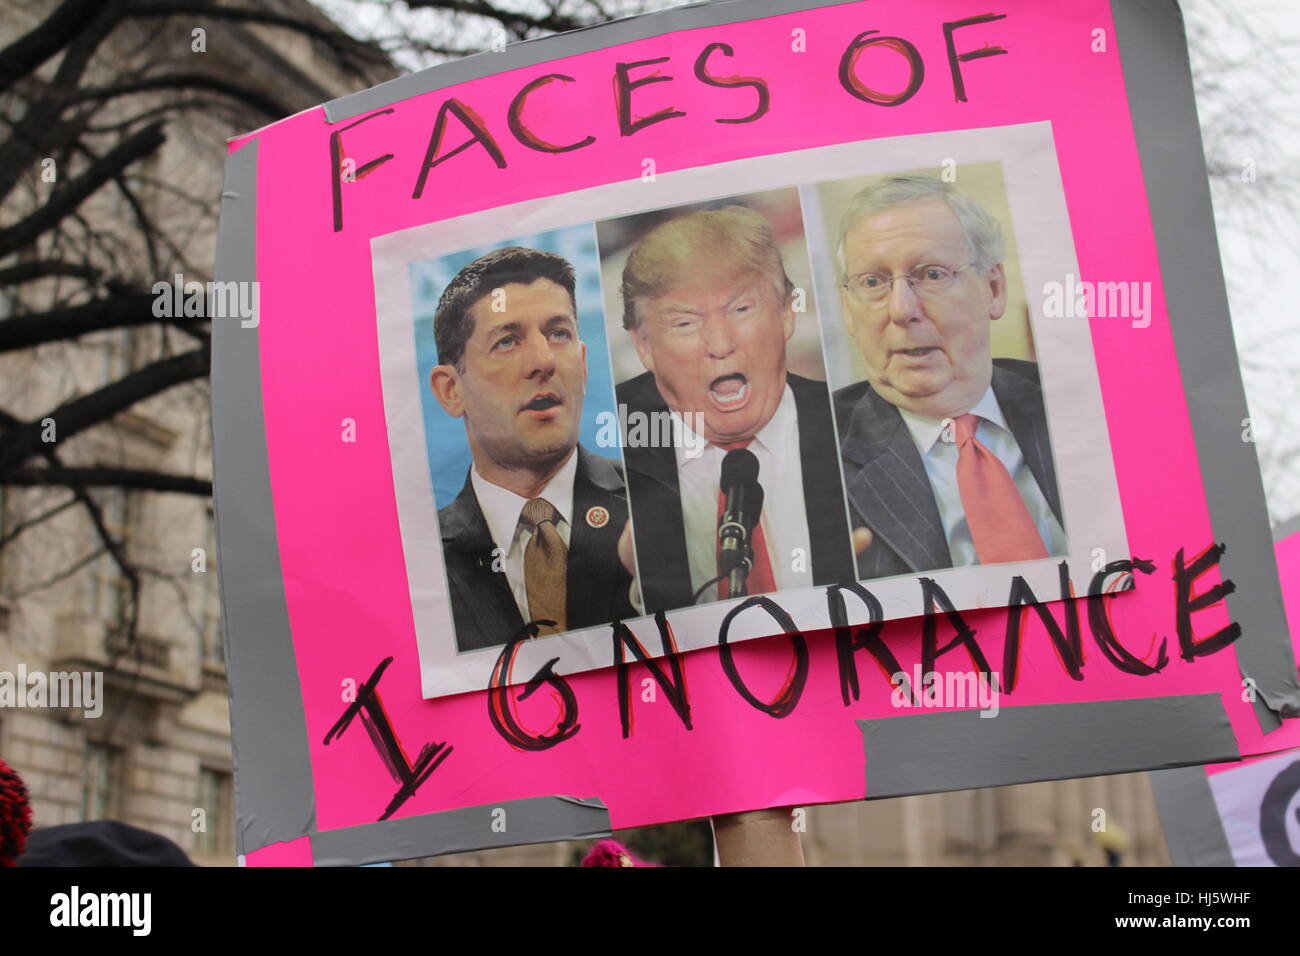 District de Columbia, Etats-Unis. 21 Jan, 2017. Un panneau avec des photos de la Chambre le président Paul Ryan, Président Donald Trump, et Kentucky le sénateur Mitch McConnell dans entre les mots "les visages de l'ignorance". Banque D'Images